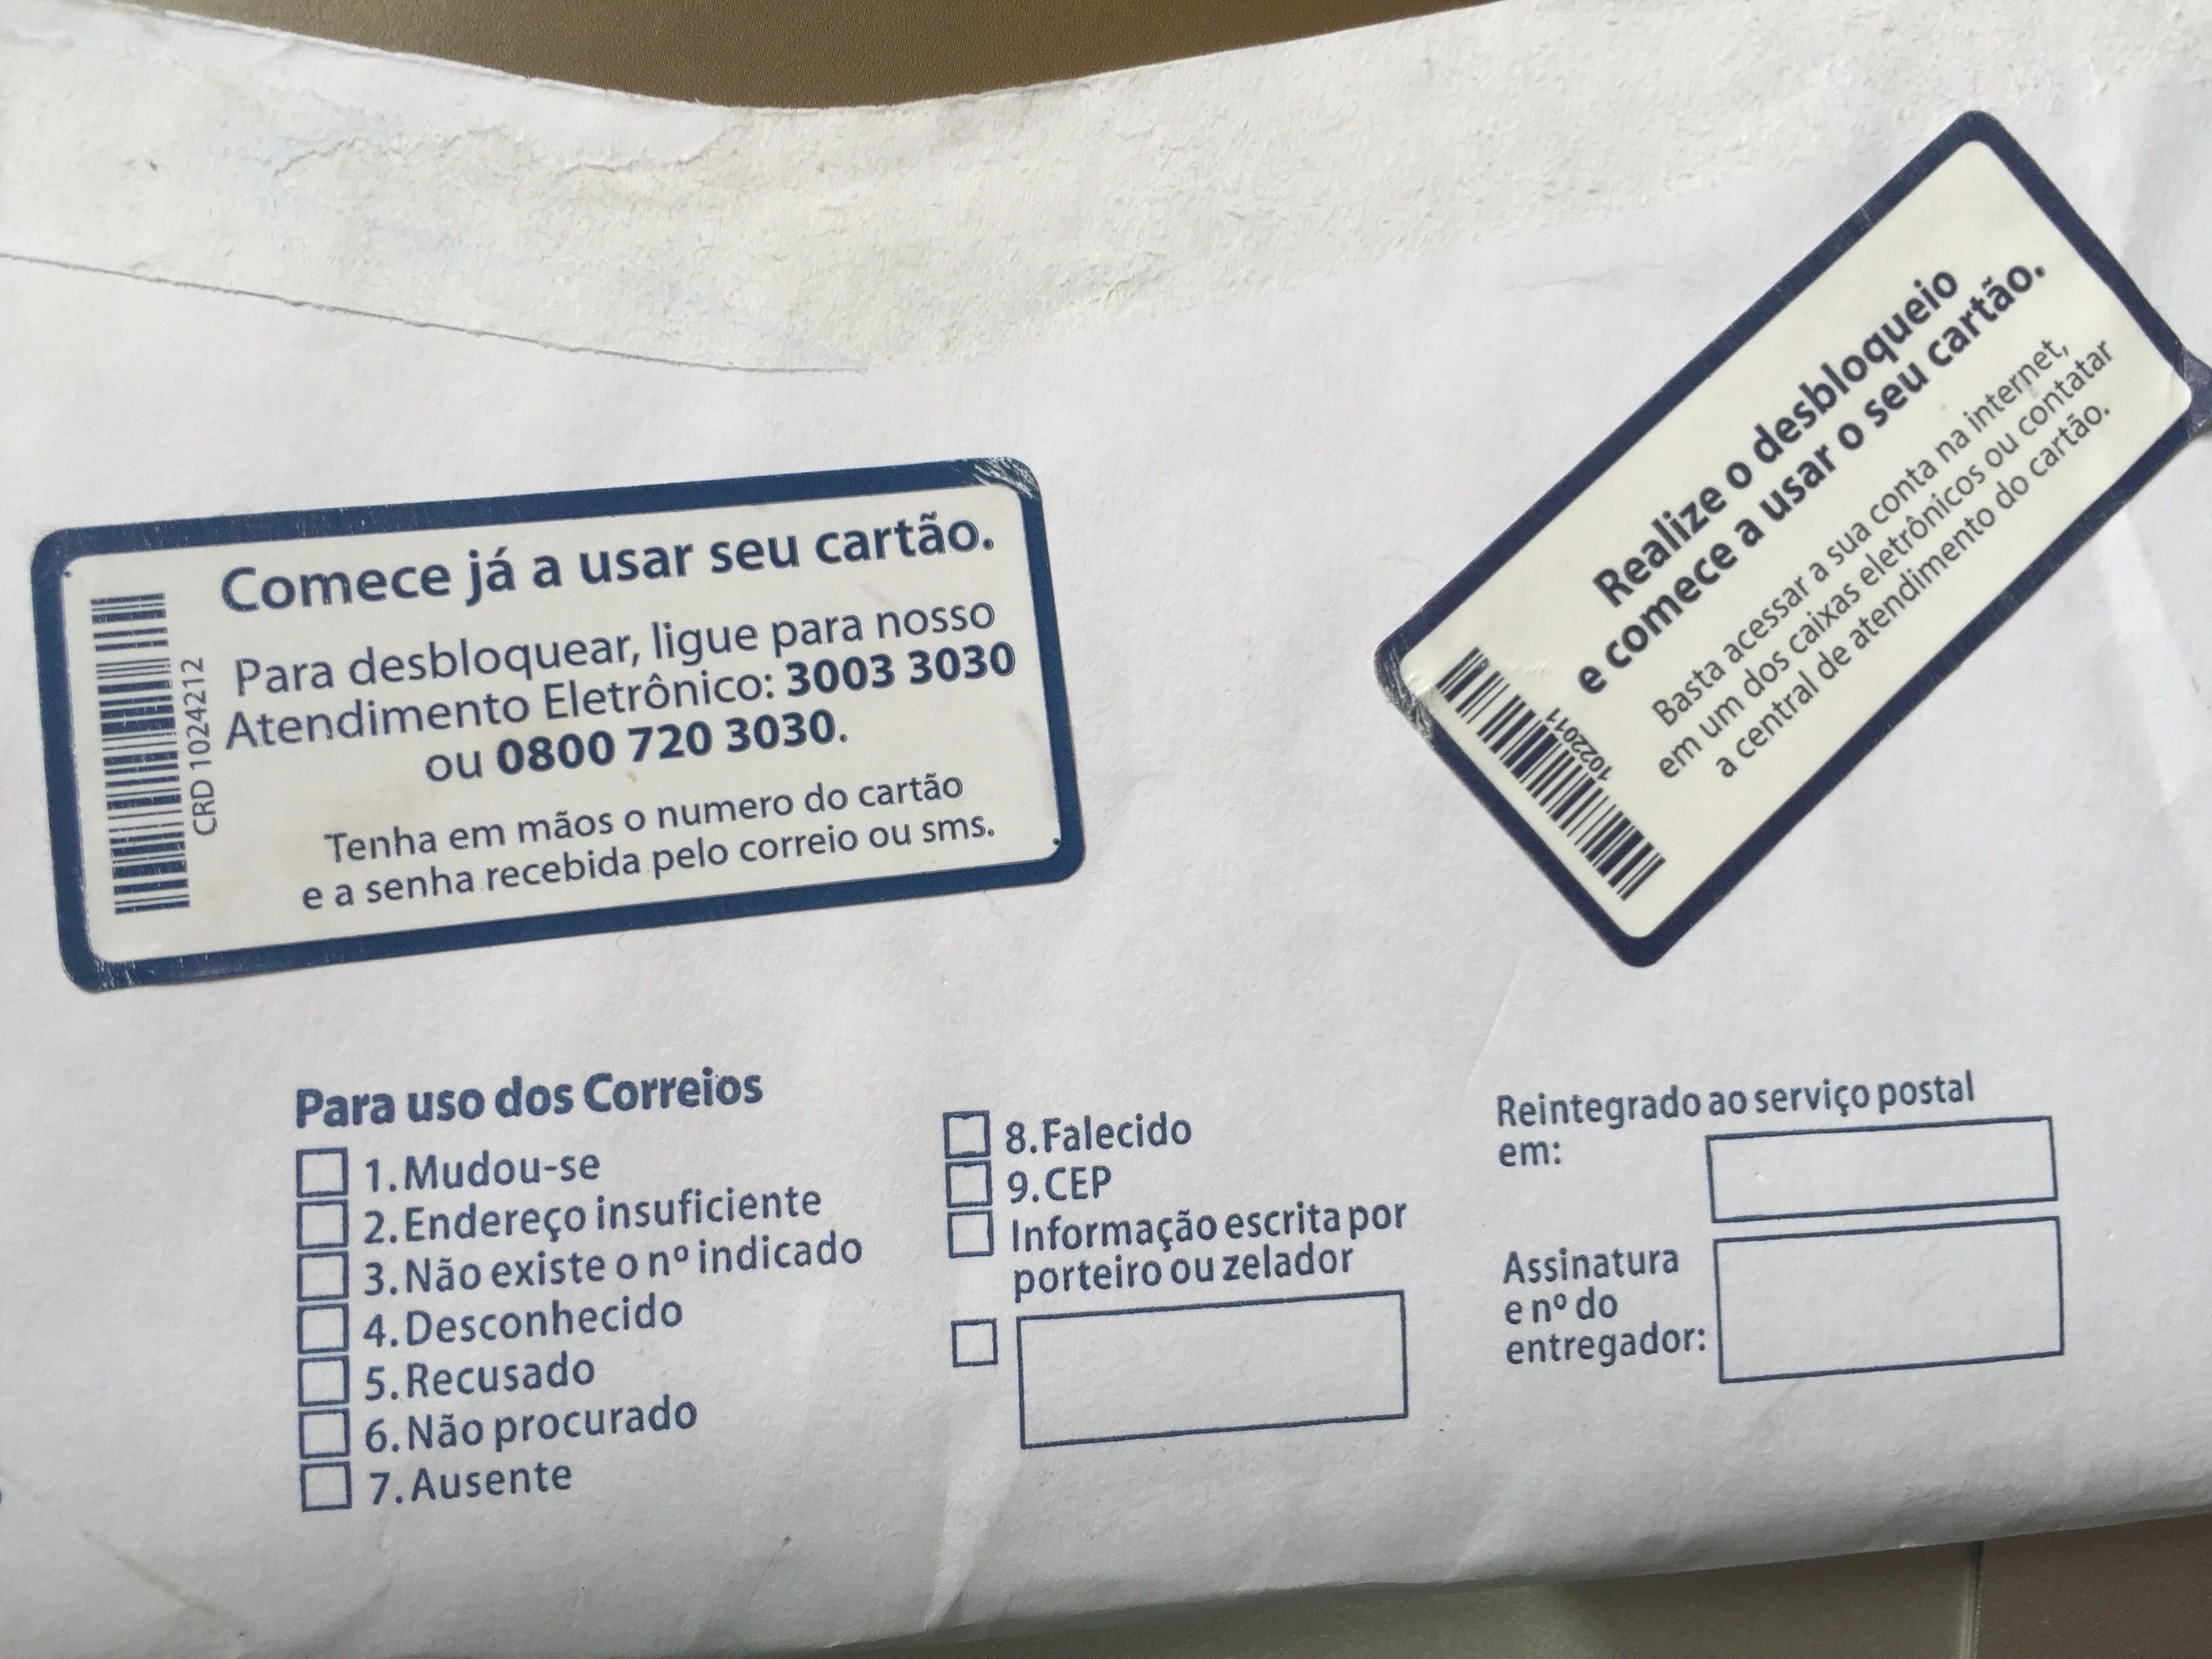 Desbloqueio do Cartão Itaú pela internet - O Cartão de Crédito